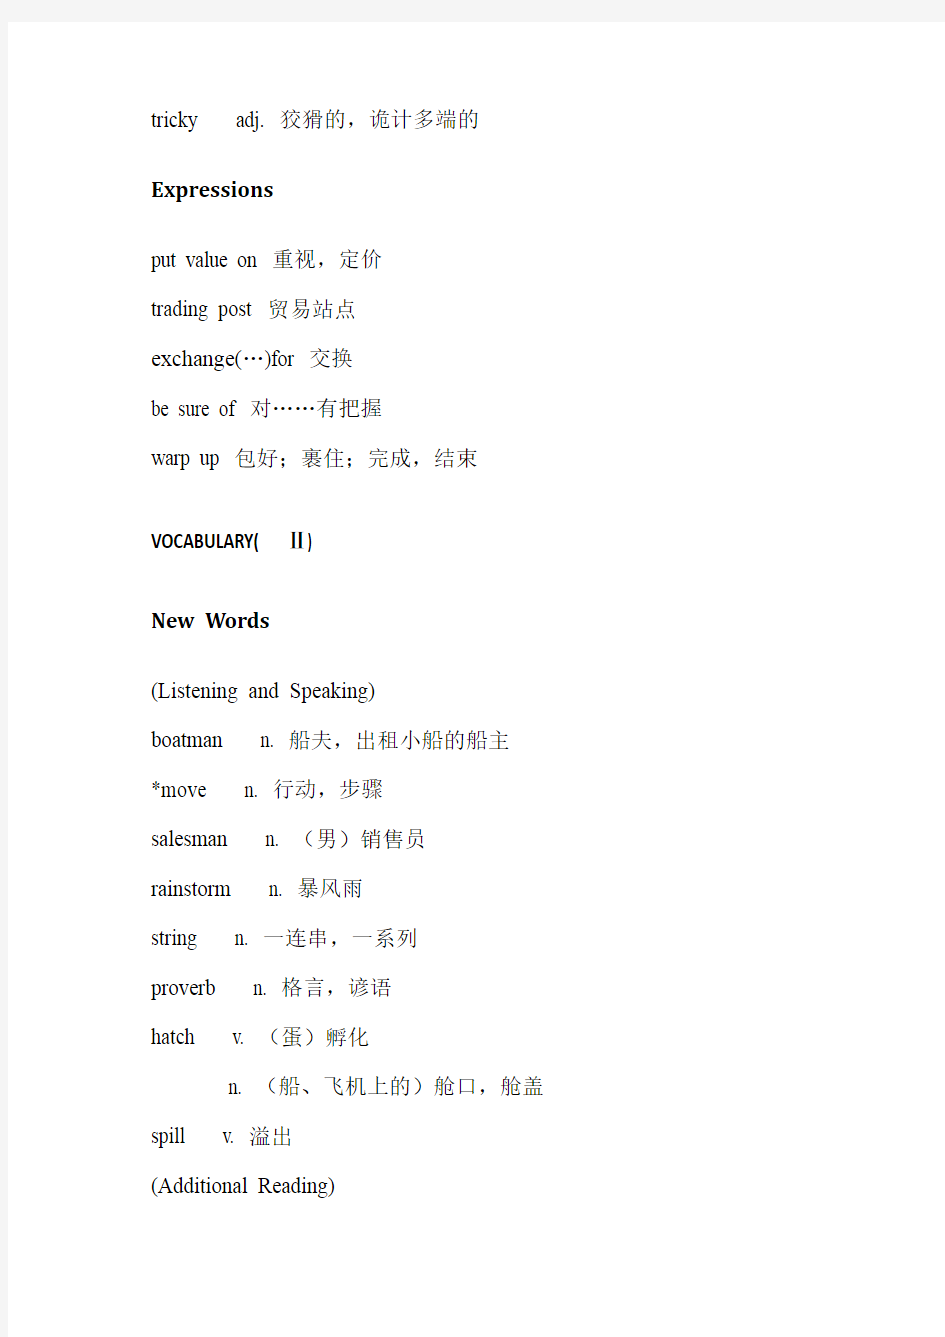 上海新世纪教材高中二年级第二学期单元词汇